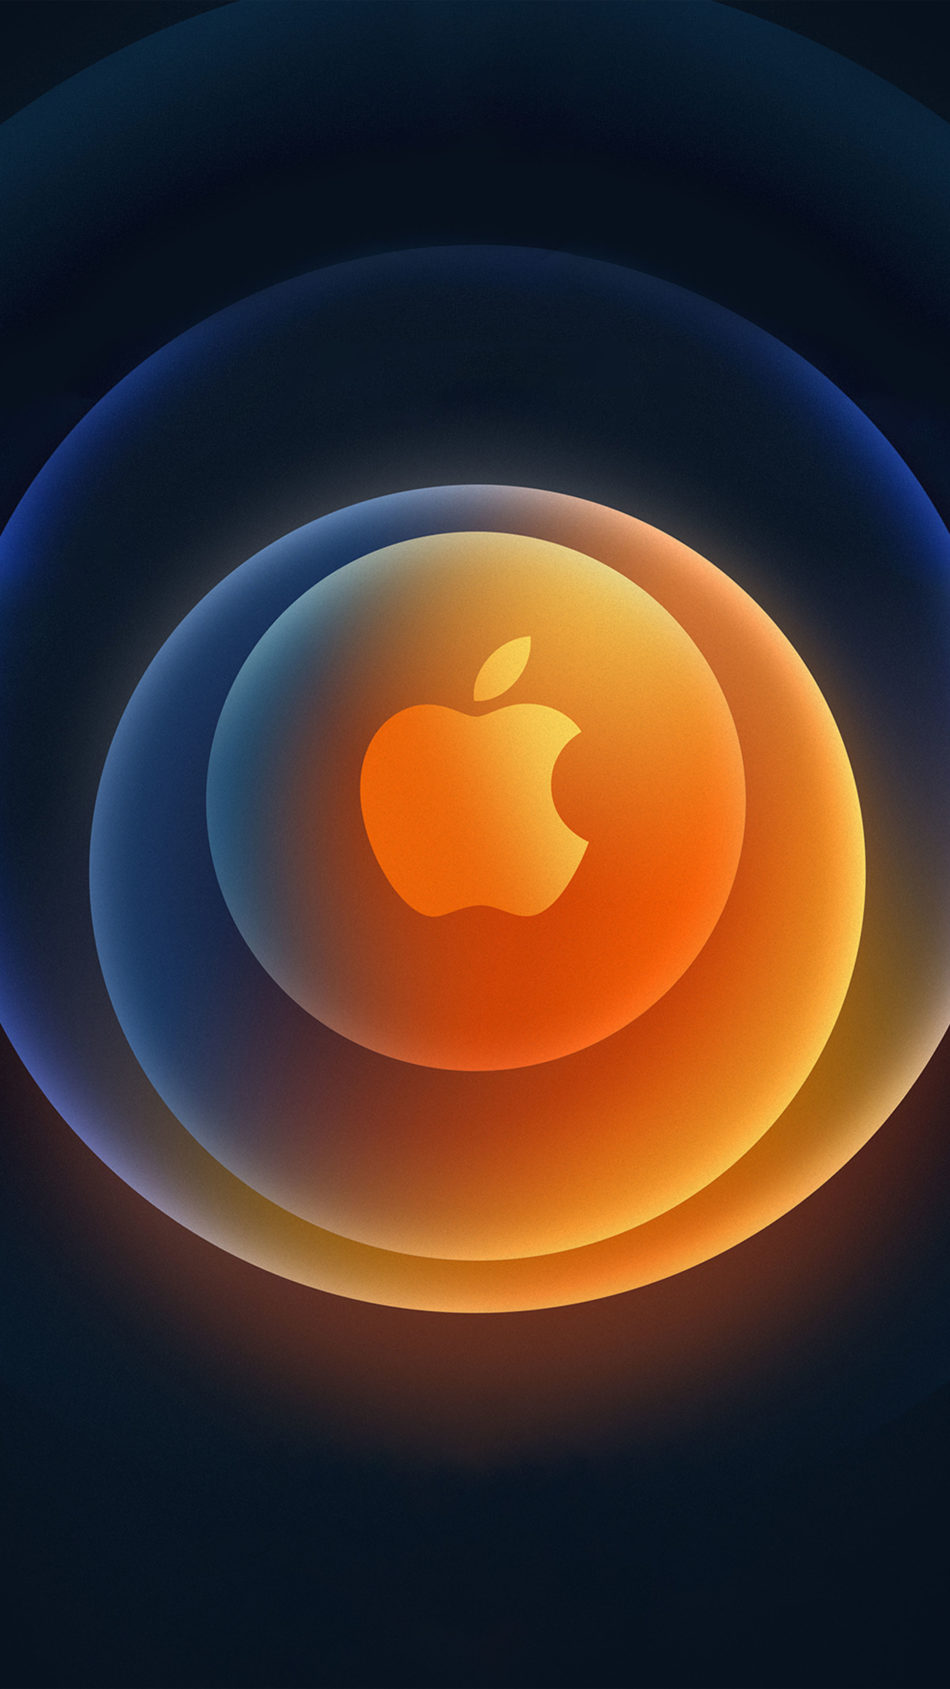 Với iPhone 12 Logo, bạn sẽ tận hưởng trải nghiệm hiện đại và sang trọng cùng ứng dụng mới nhất và thông minh nhất từ Apple. Logo tuyệt đẹp của iPhone 12 là cách tuyệt vời để giúp bạn thể hiện phong cách và thể hiện sự nổi bật của mình.